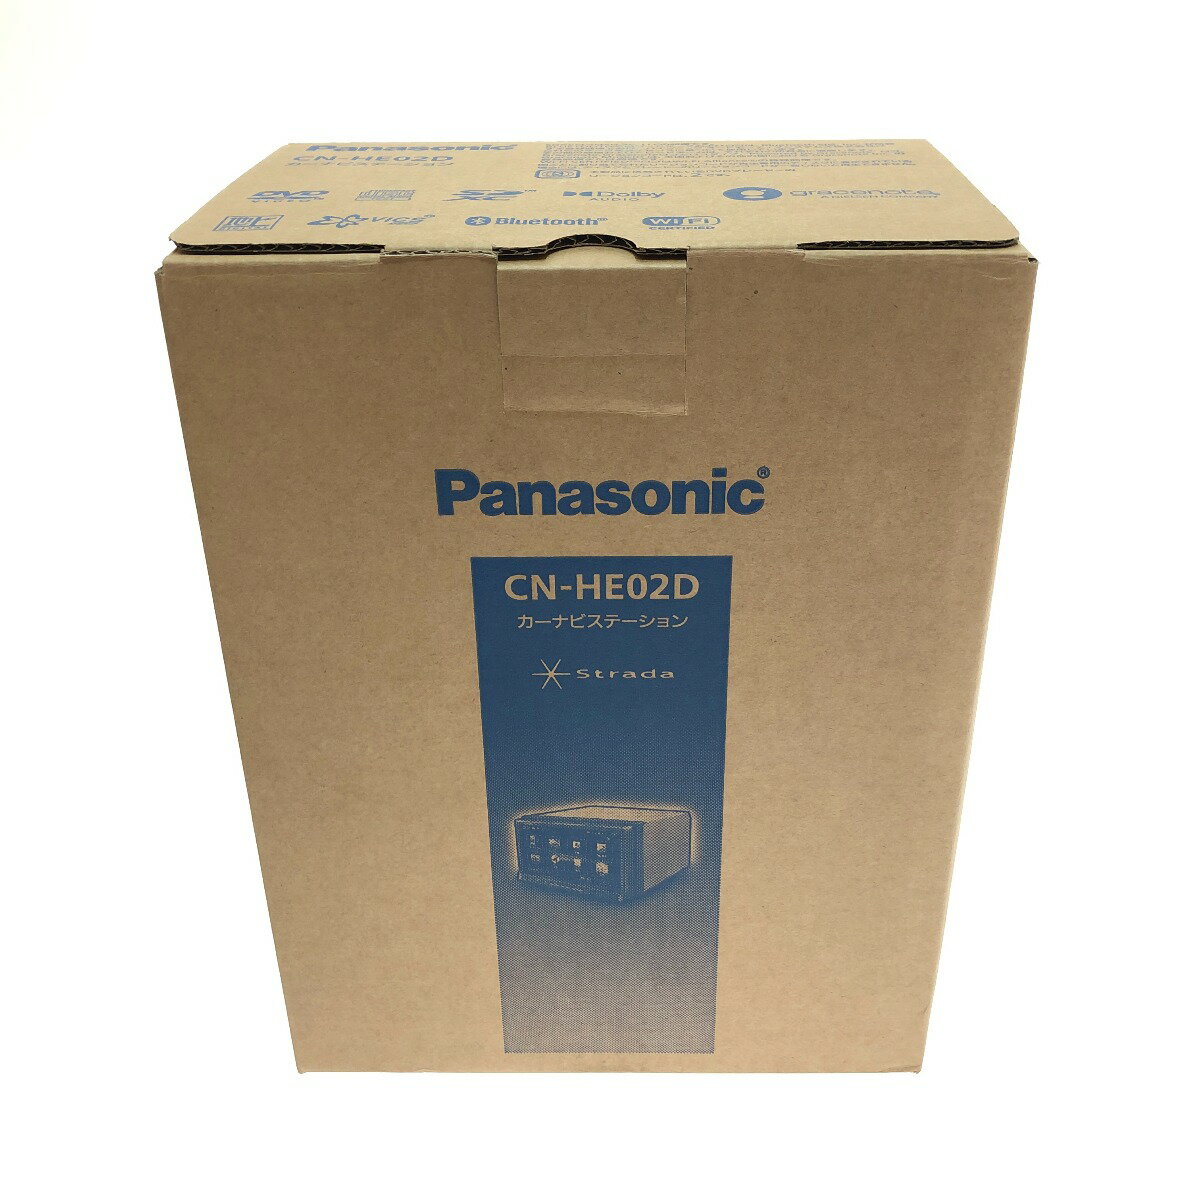 □□【中古】Panasonic パナソニック ストラーダ カーナビ CN-HE02D Sランク